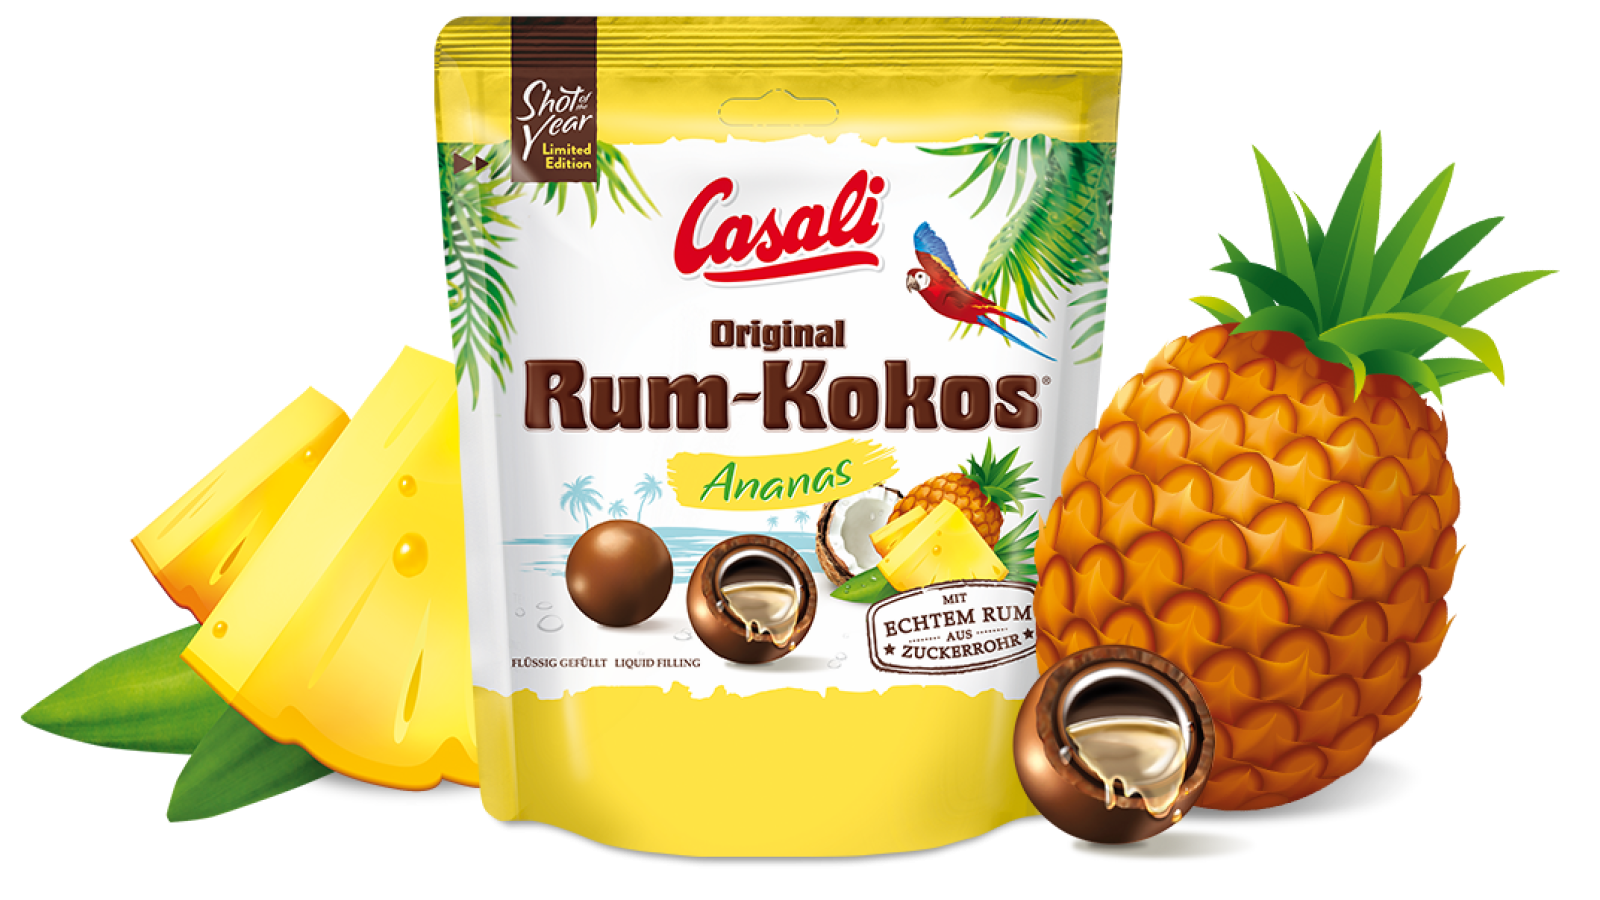 Shot of the Year Rum-Kokos Ananas 175g